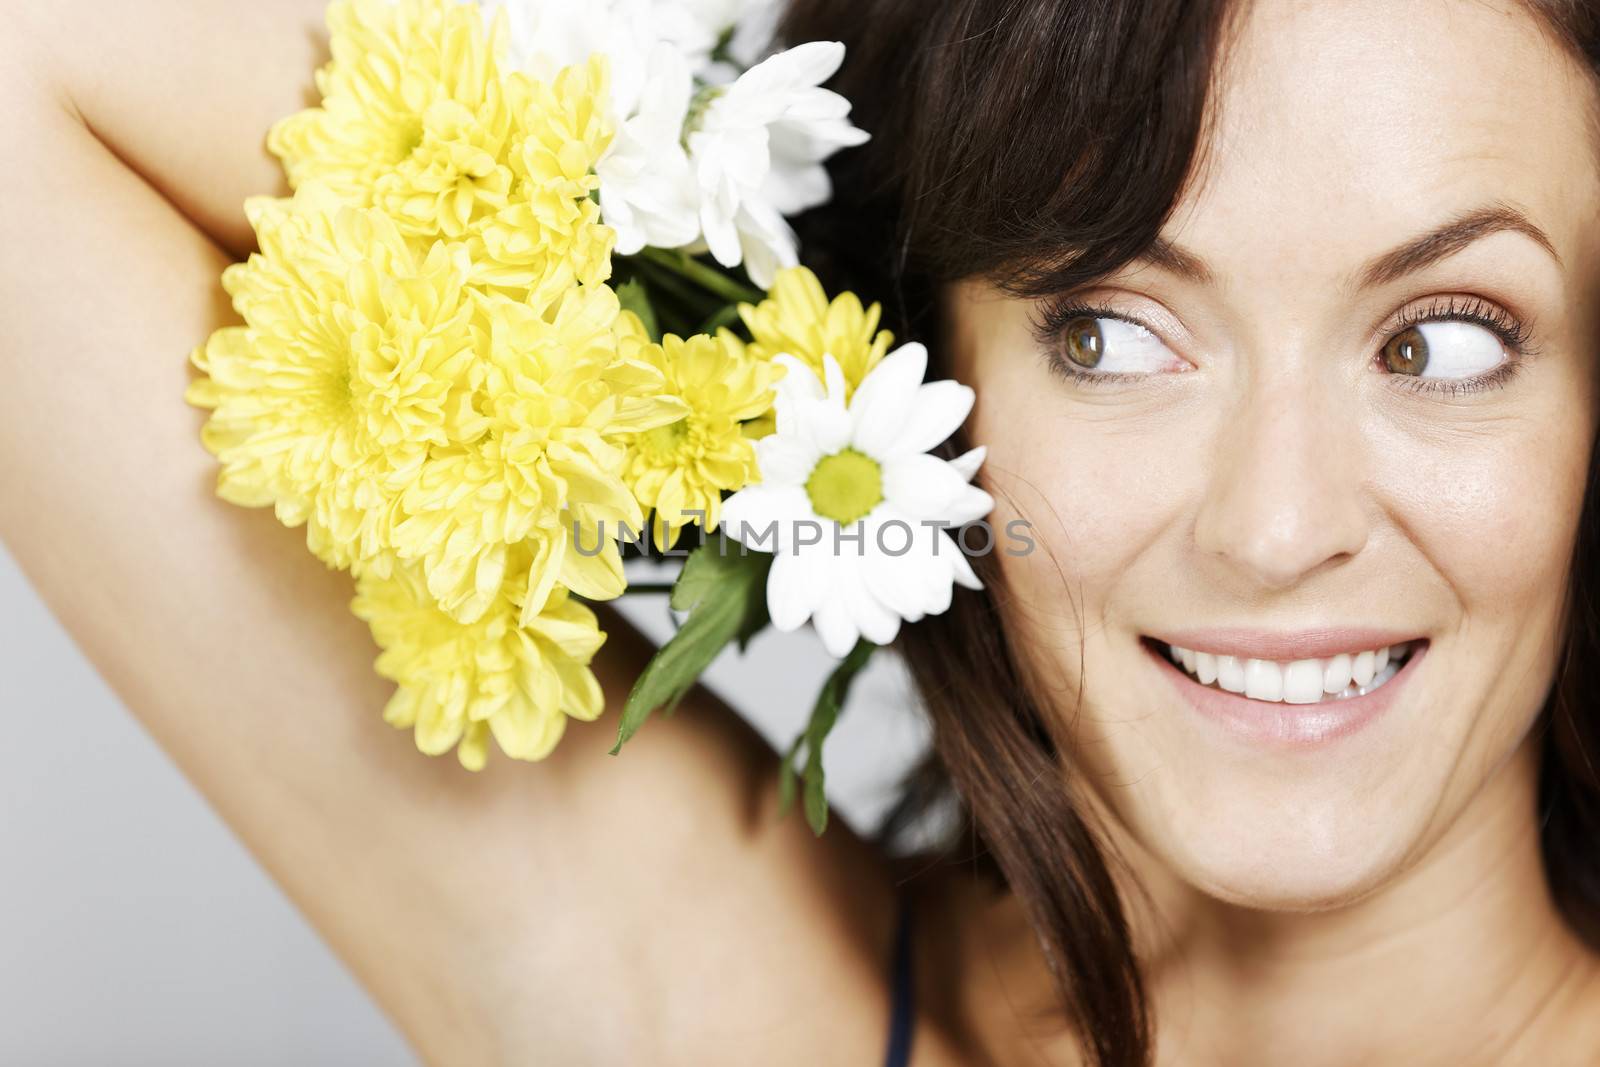 Woman holding flowers by studiofi